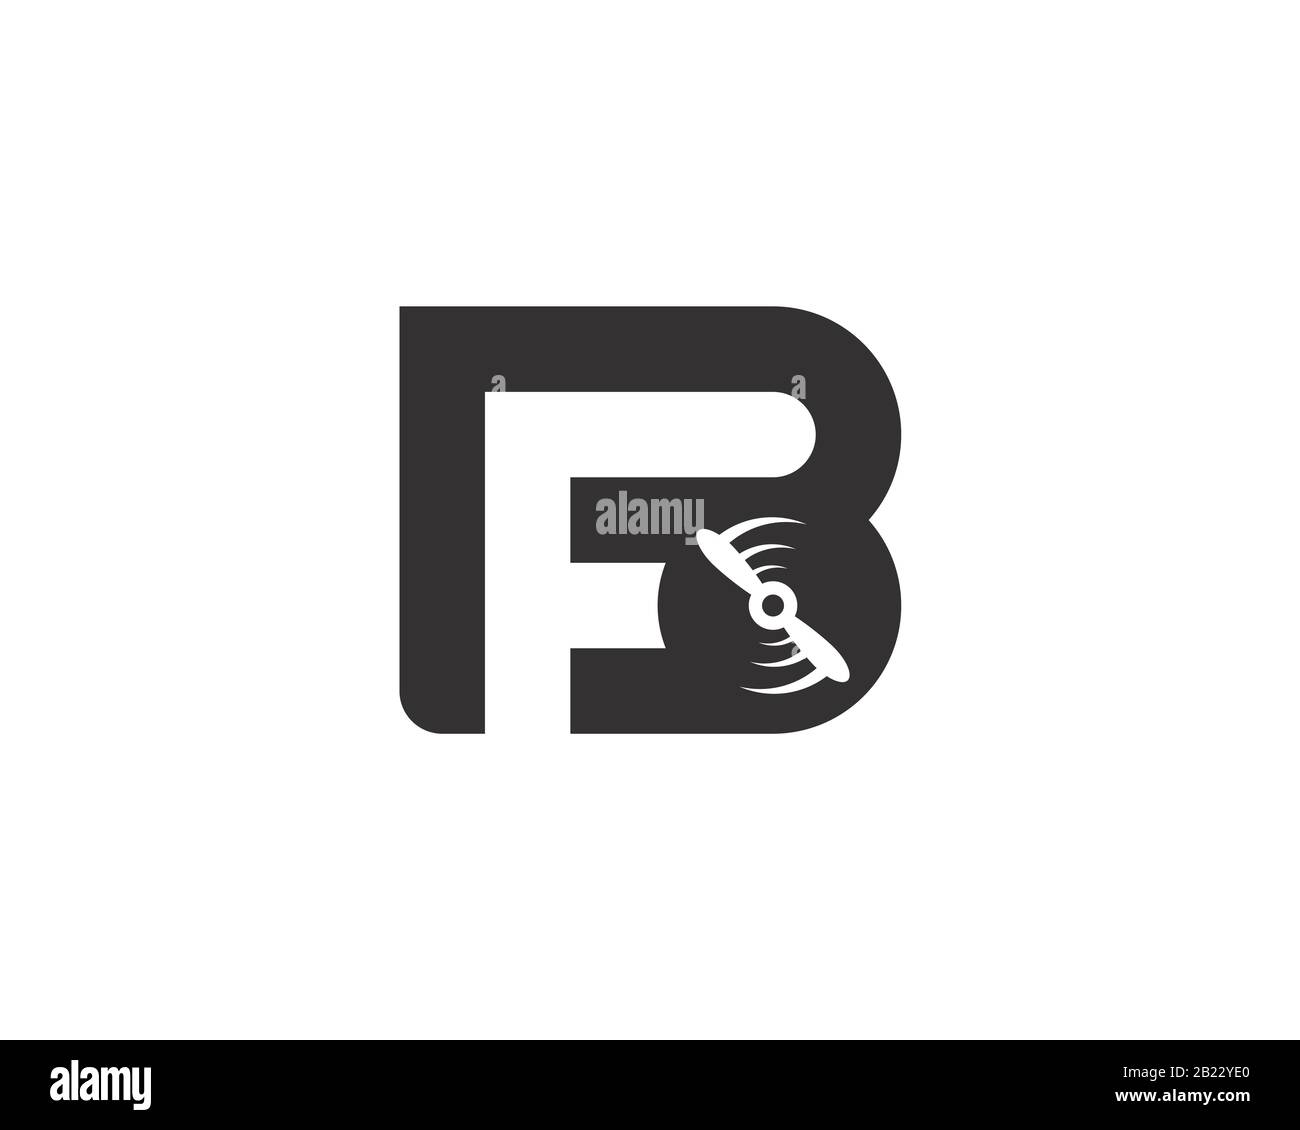 Monogramme anagram lettermark logo de la lettre B F plane PROPELLER rotation Illustration de Vecteur